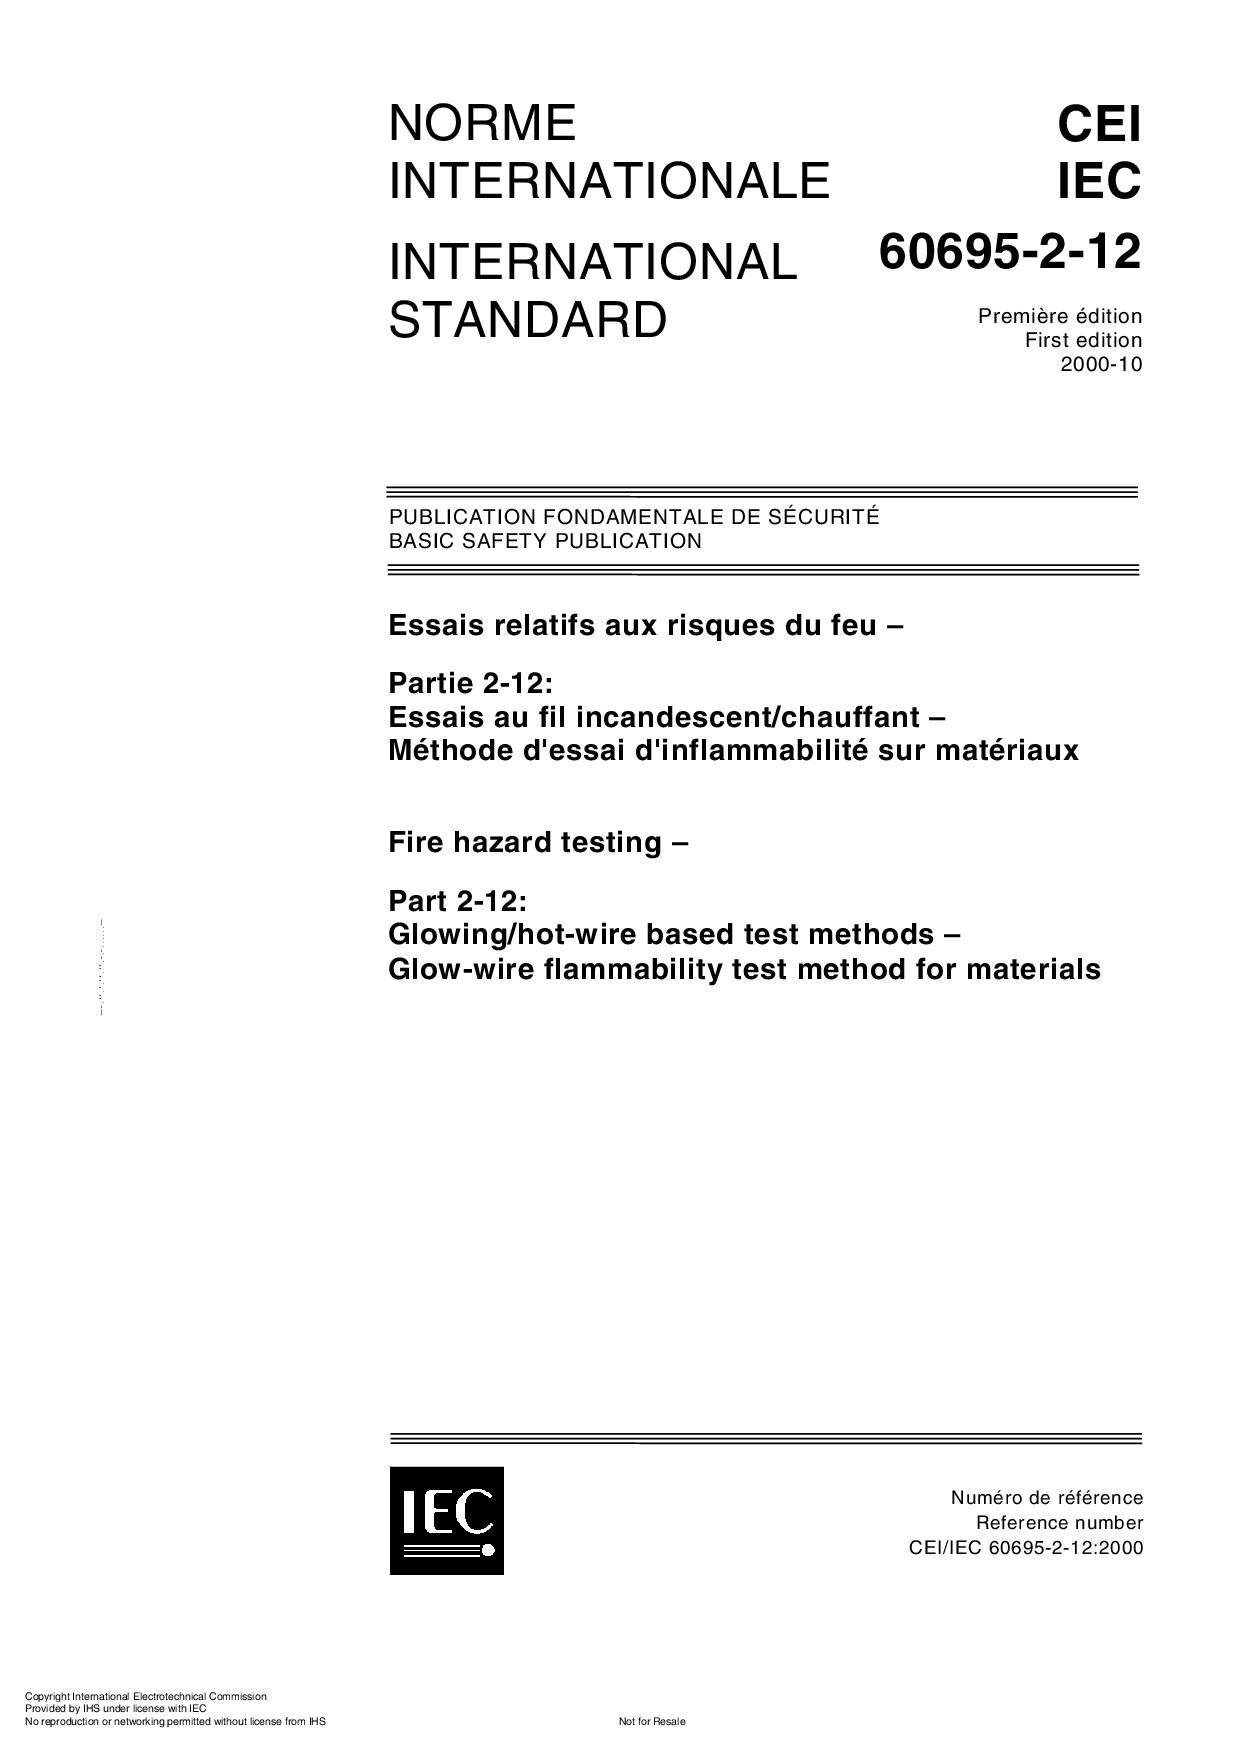 IEC 60695-2-12-2000